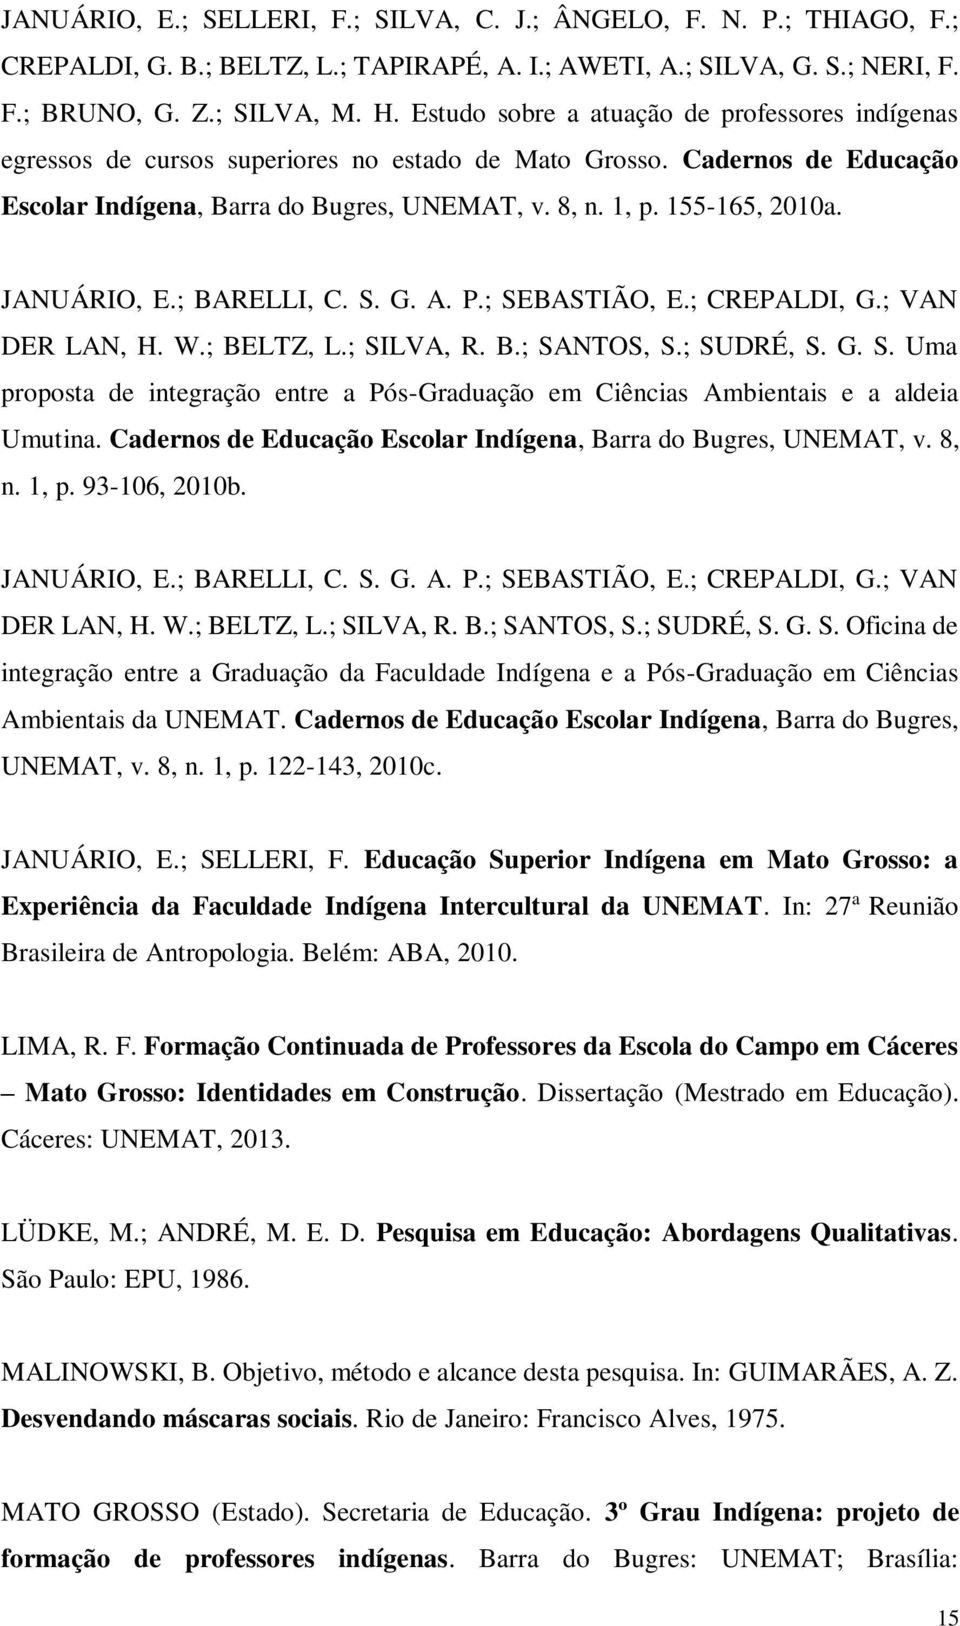 JANUÁRIO, E.; BARELLI, C. S. G. A. P.; SEBASTIÃO, E.; CREPALDI, G.; VAN DER LAN, H. W.; BELTZ, L.; SILVA, R. B.; SANTOS, S.; SUDRÉ, S. G. S. Uma proposta de integração entre a Pós-Graduação em Ciências Ambientais e a aldeia Umutina.